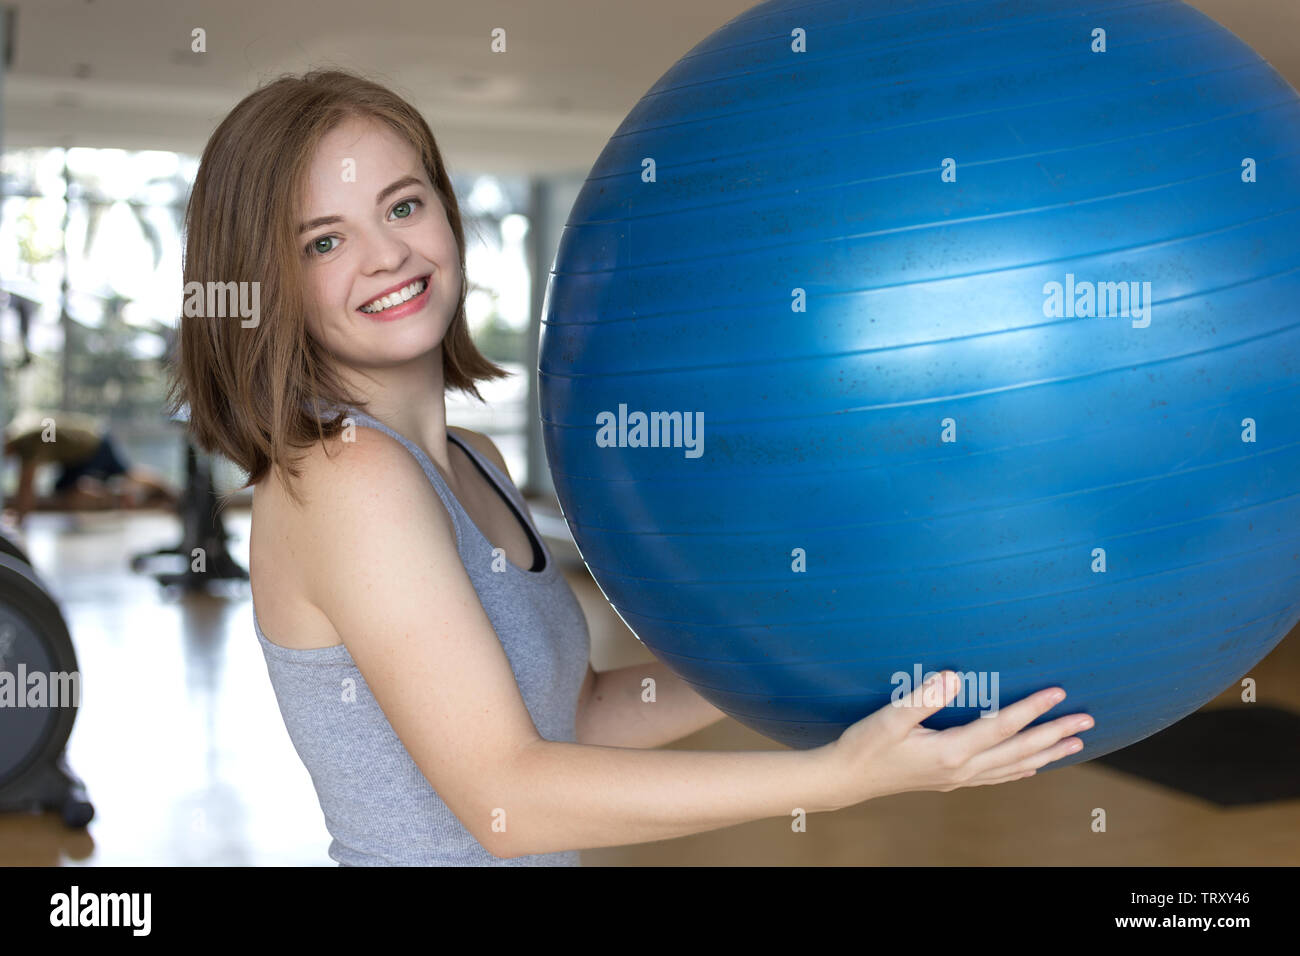 Smiling young woman holding a blue ballon de gymnastique dans la salle de sport, d'entraînement ou de faire de l'exercice pilates yoga Banque D'Images